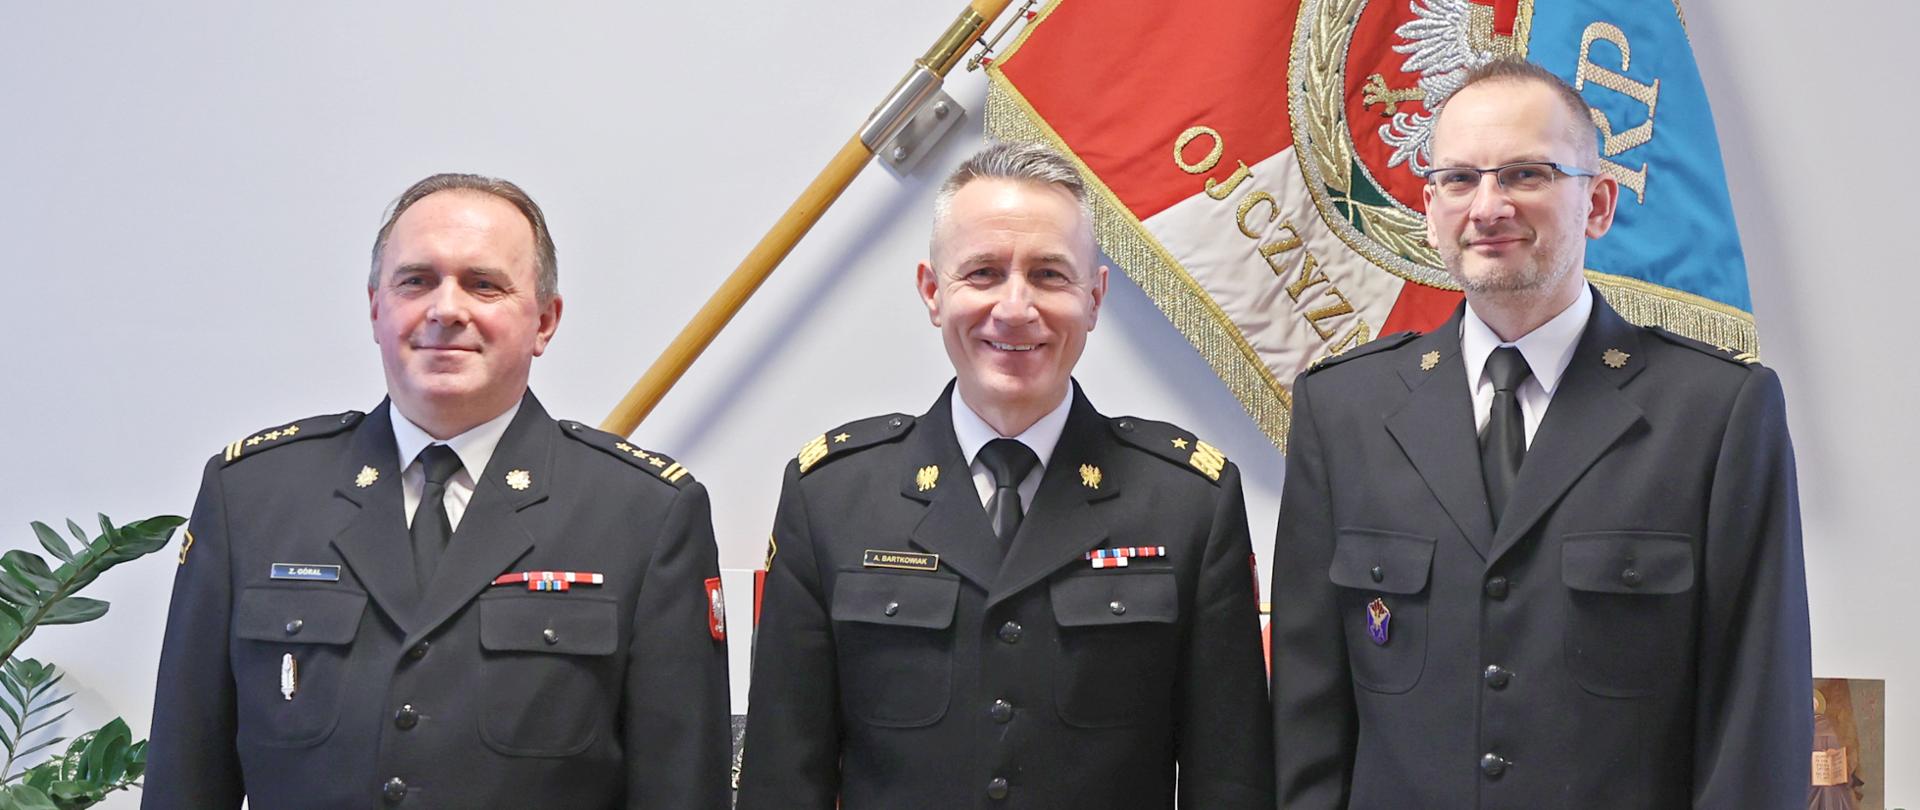 Zdjęcie pamiątkowe. Trzej mężczyźni w mundurach na tle sztandaru